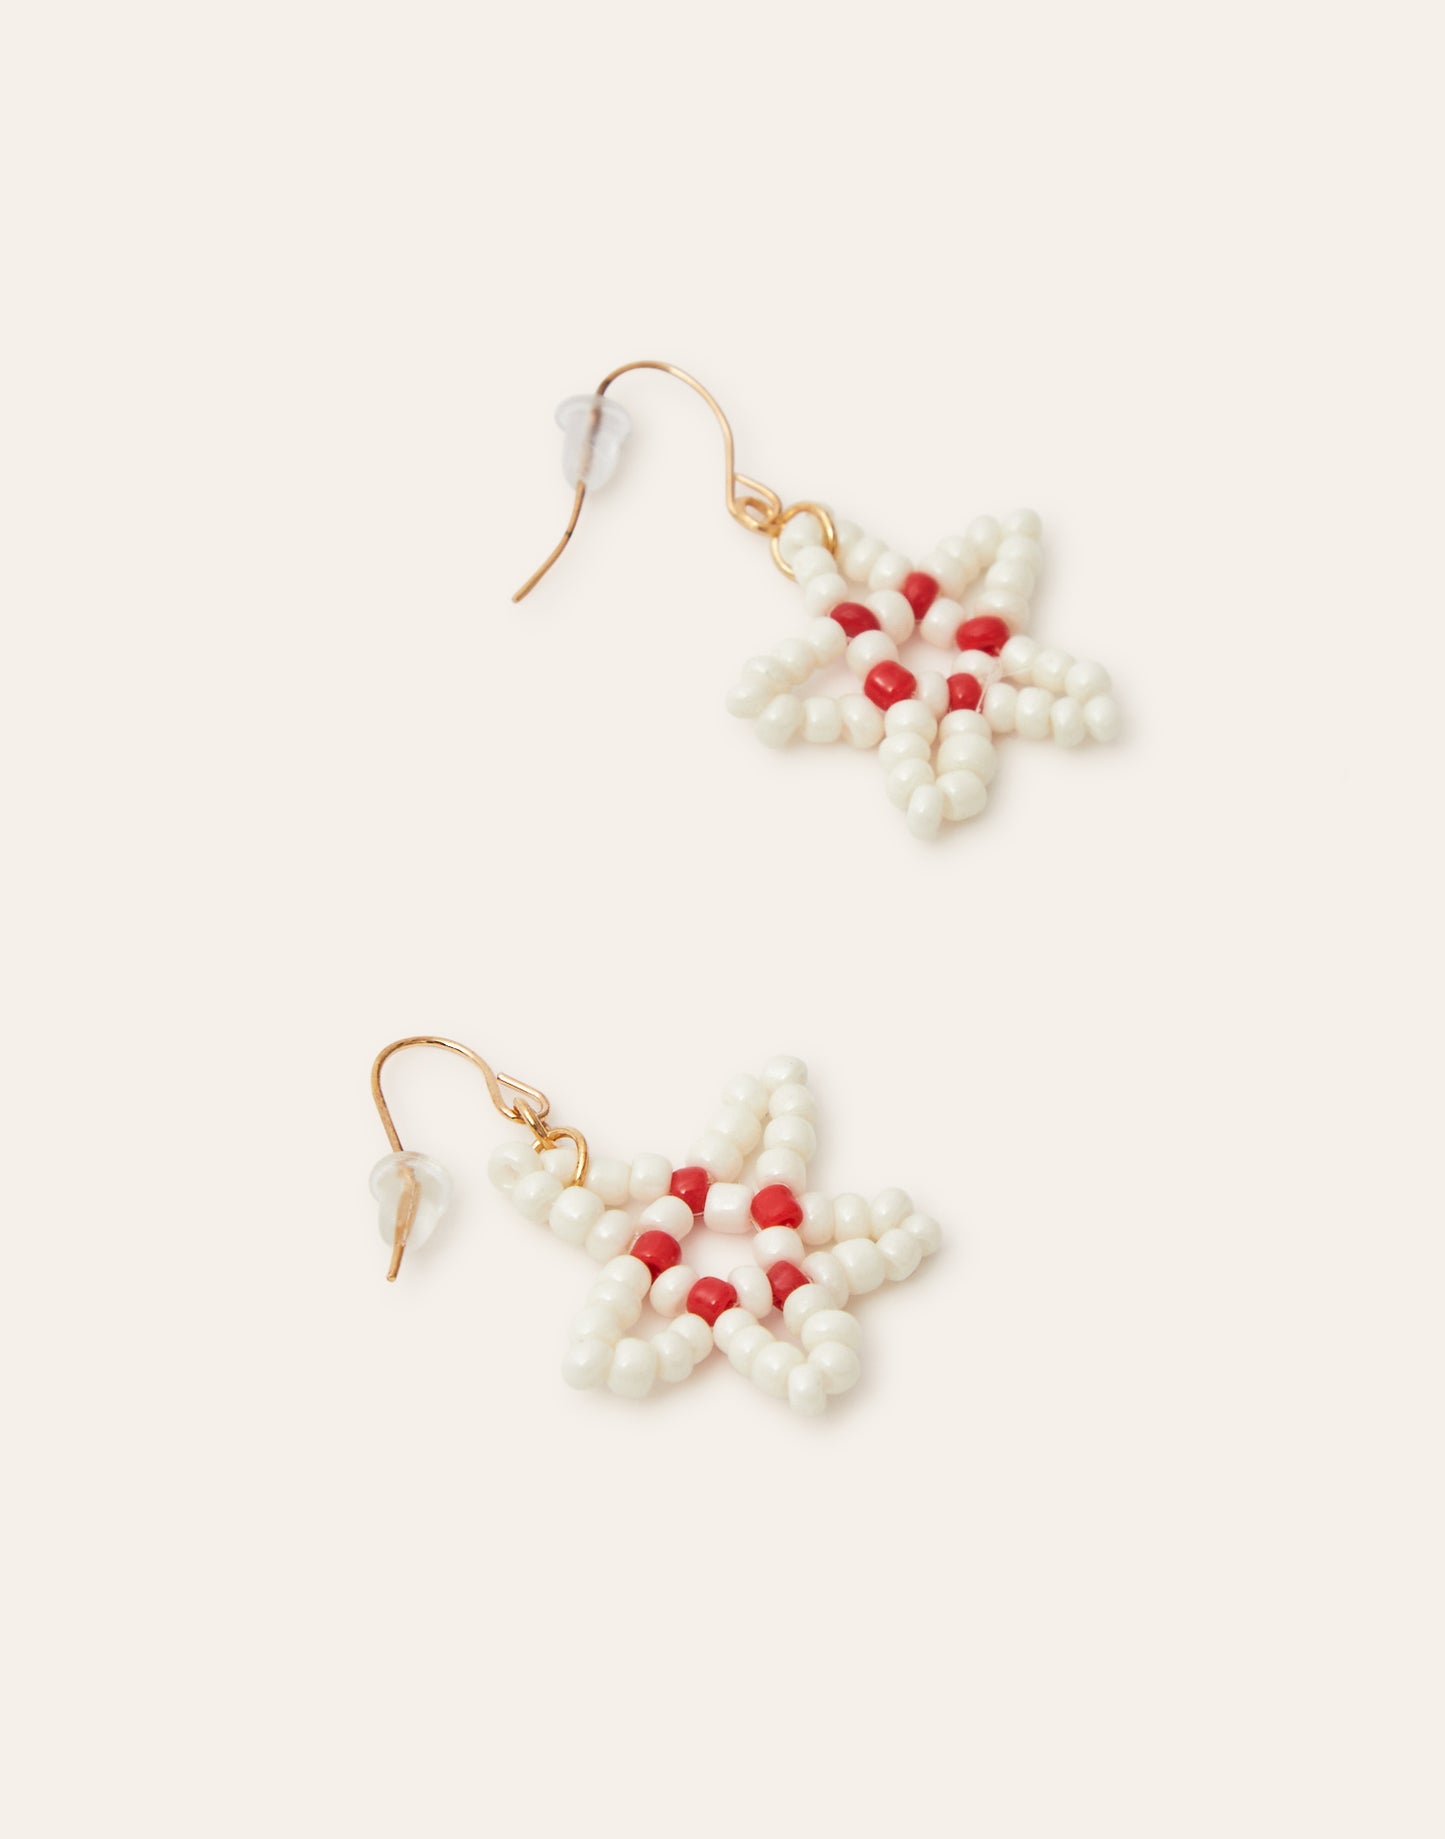 Coral Star Earrings